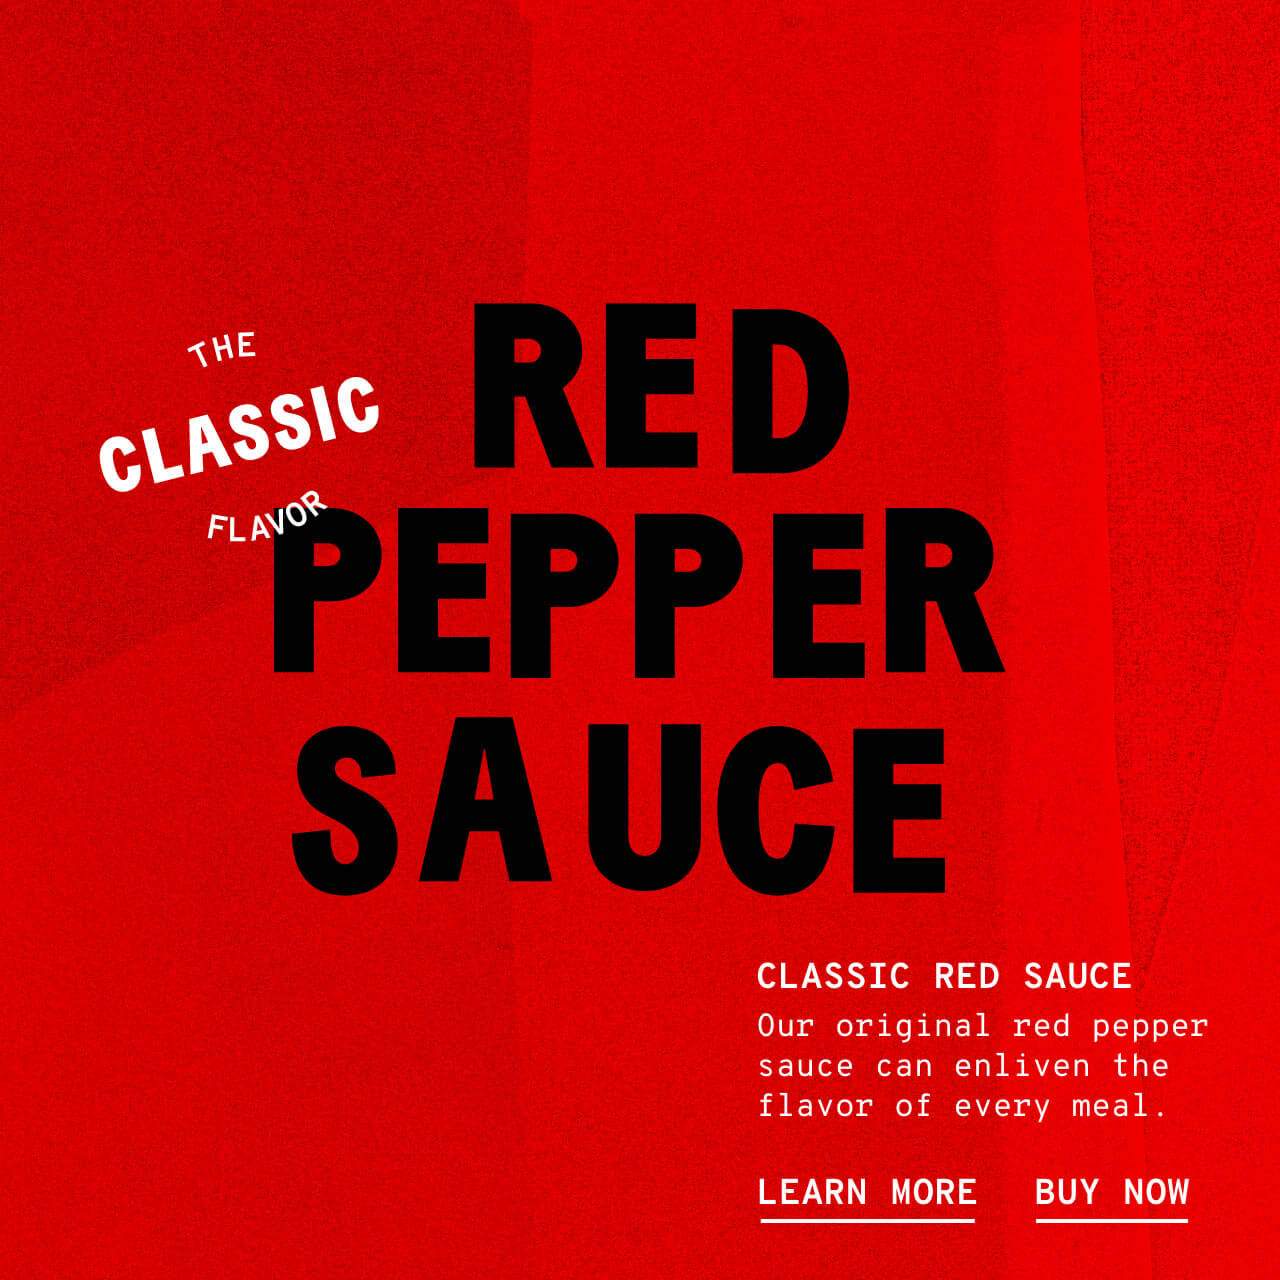 Classic Red Sauce - Description